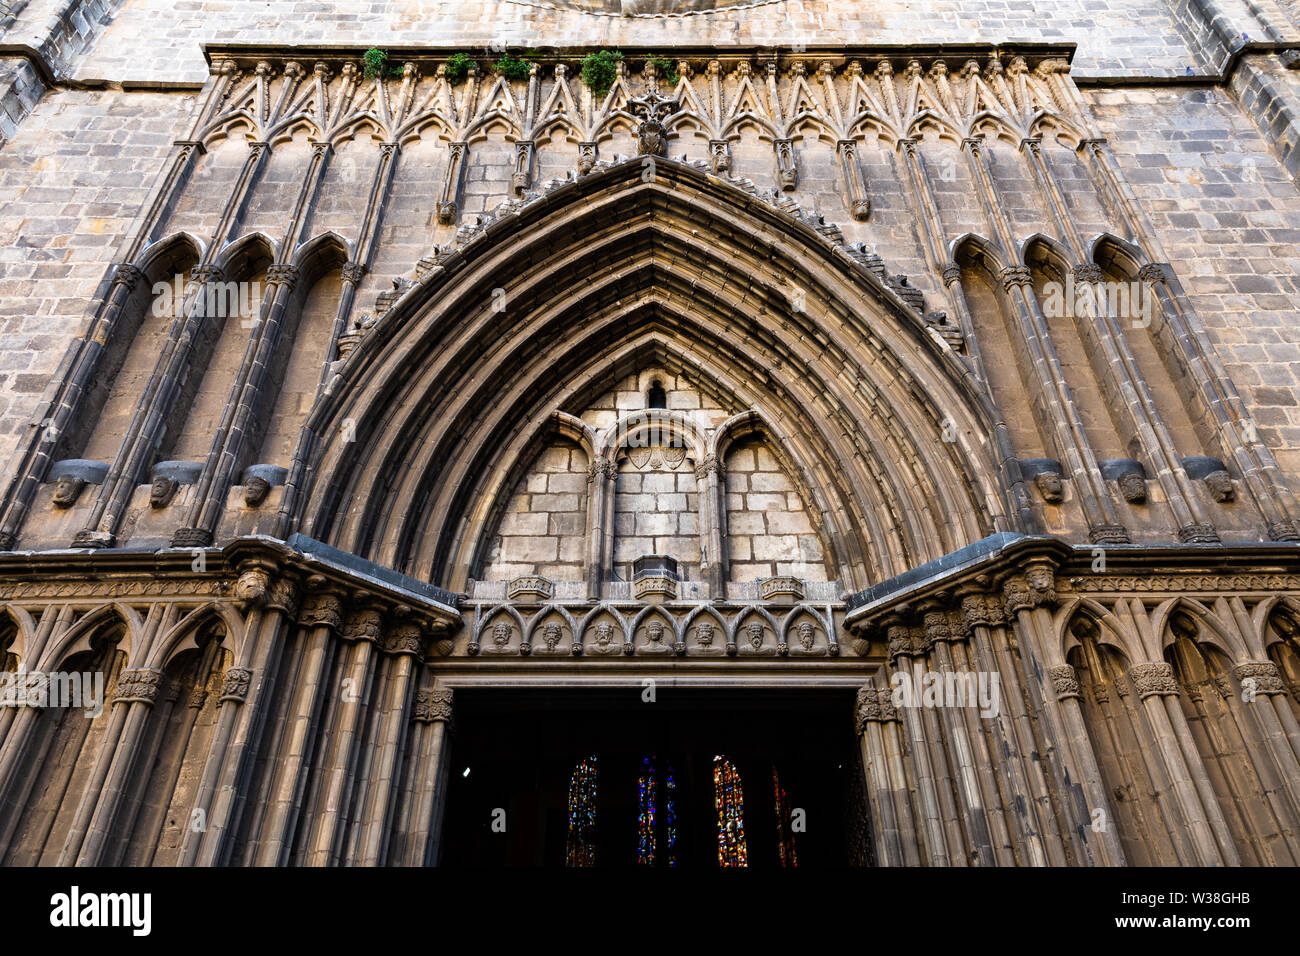 Esglesia de Santa Maria del Pi. Portal decorado en un típico estilo gótico catalán. Barcelona, España. Foto de stock